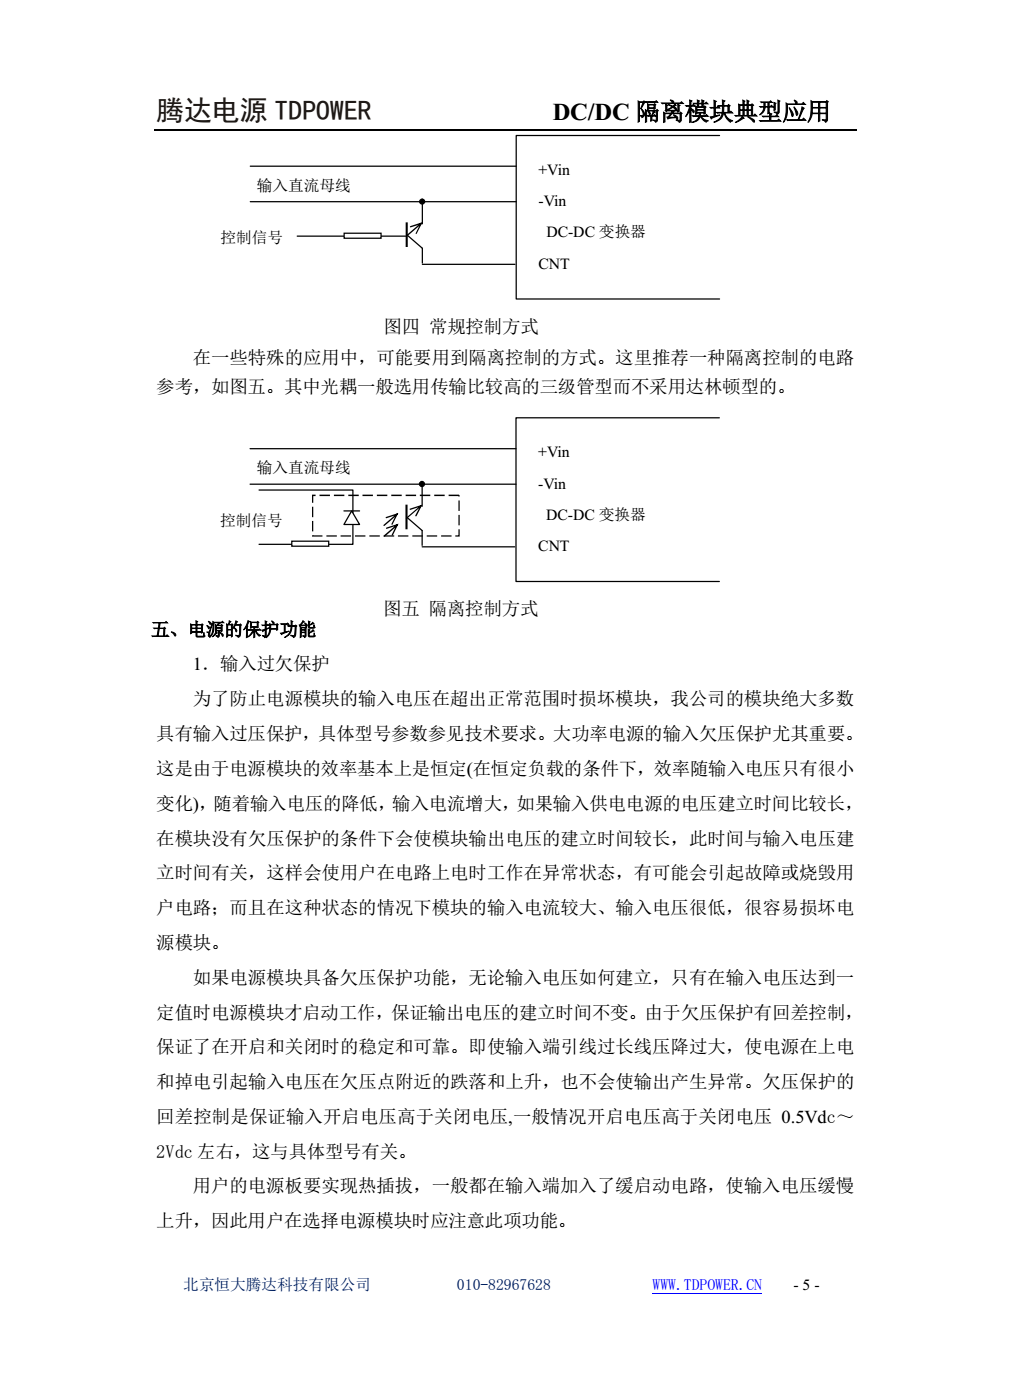 腾达电源DCDC隔离电源模块典型应用文档(图5)